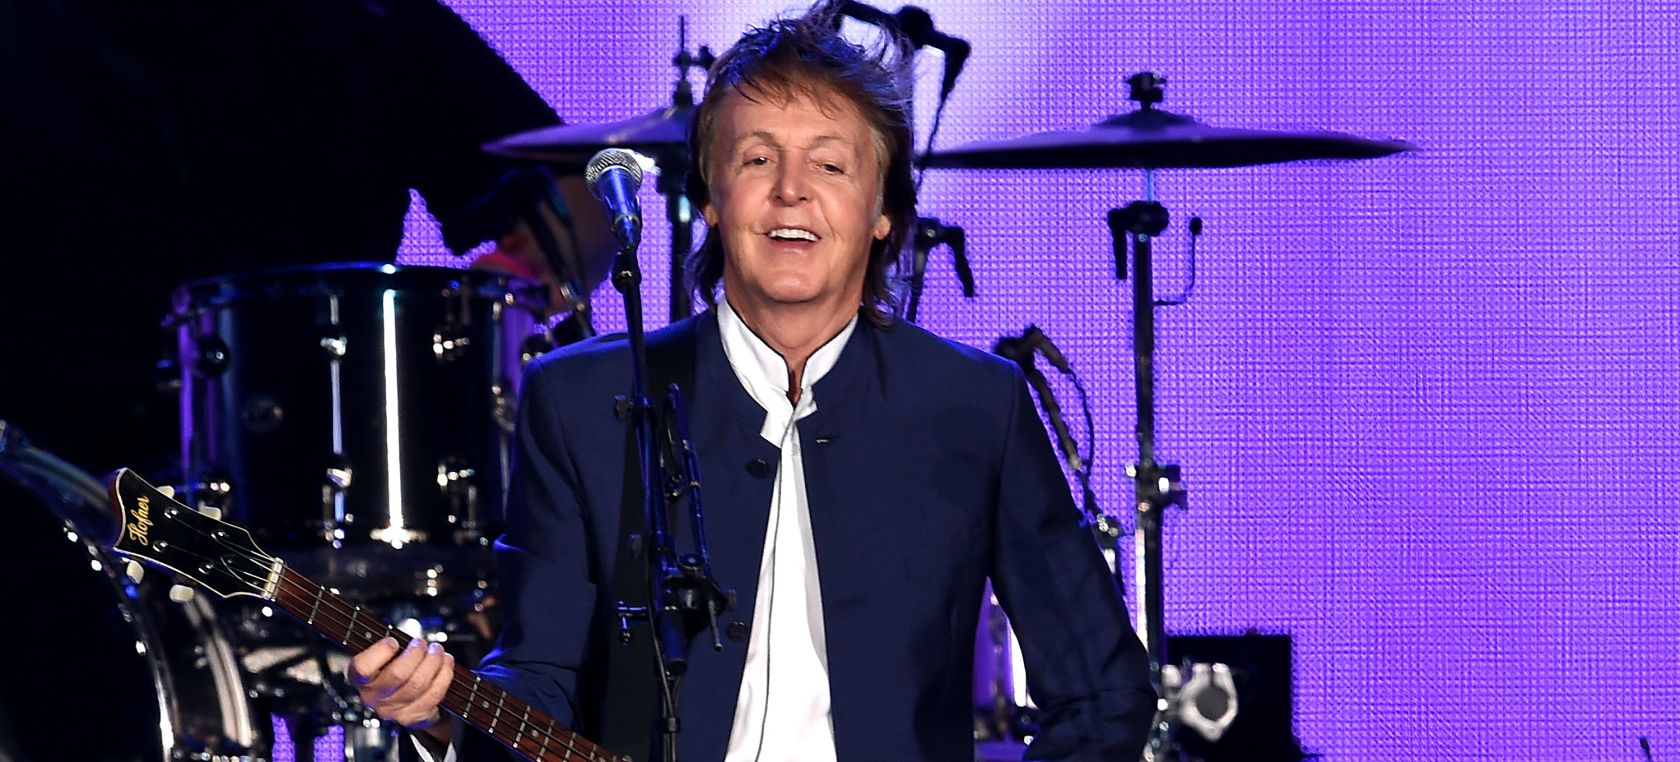 Paul McCartney dedica unas tiernas palabras a Taylor Hawkins: “Fuiste un verdadero héroe del Rock and Roll”